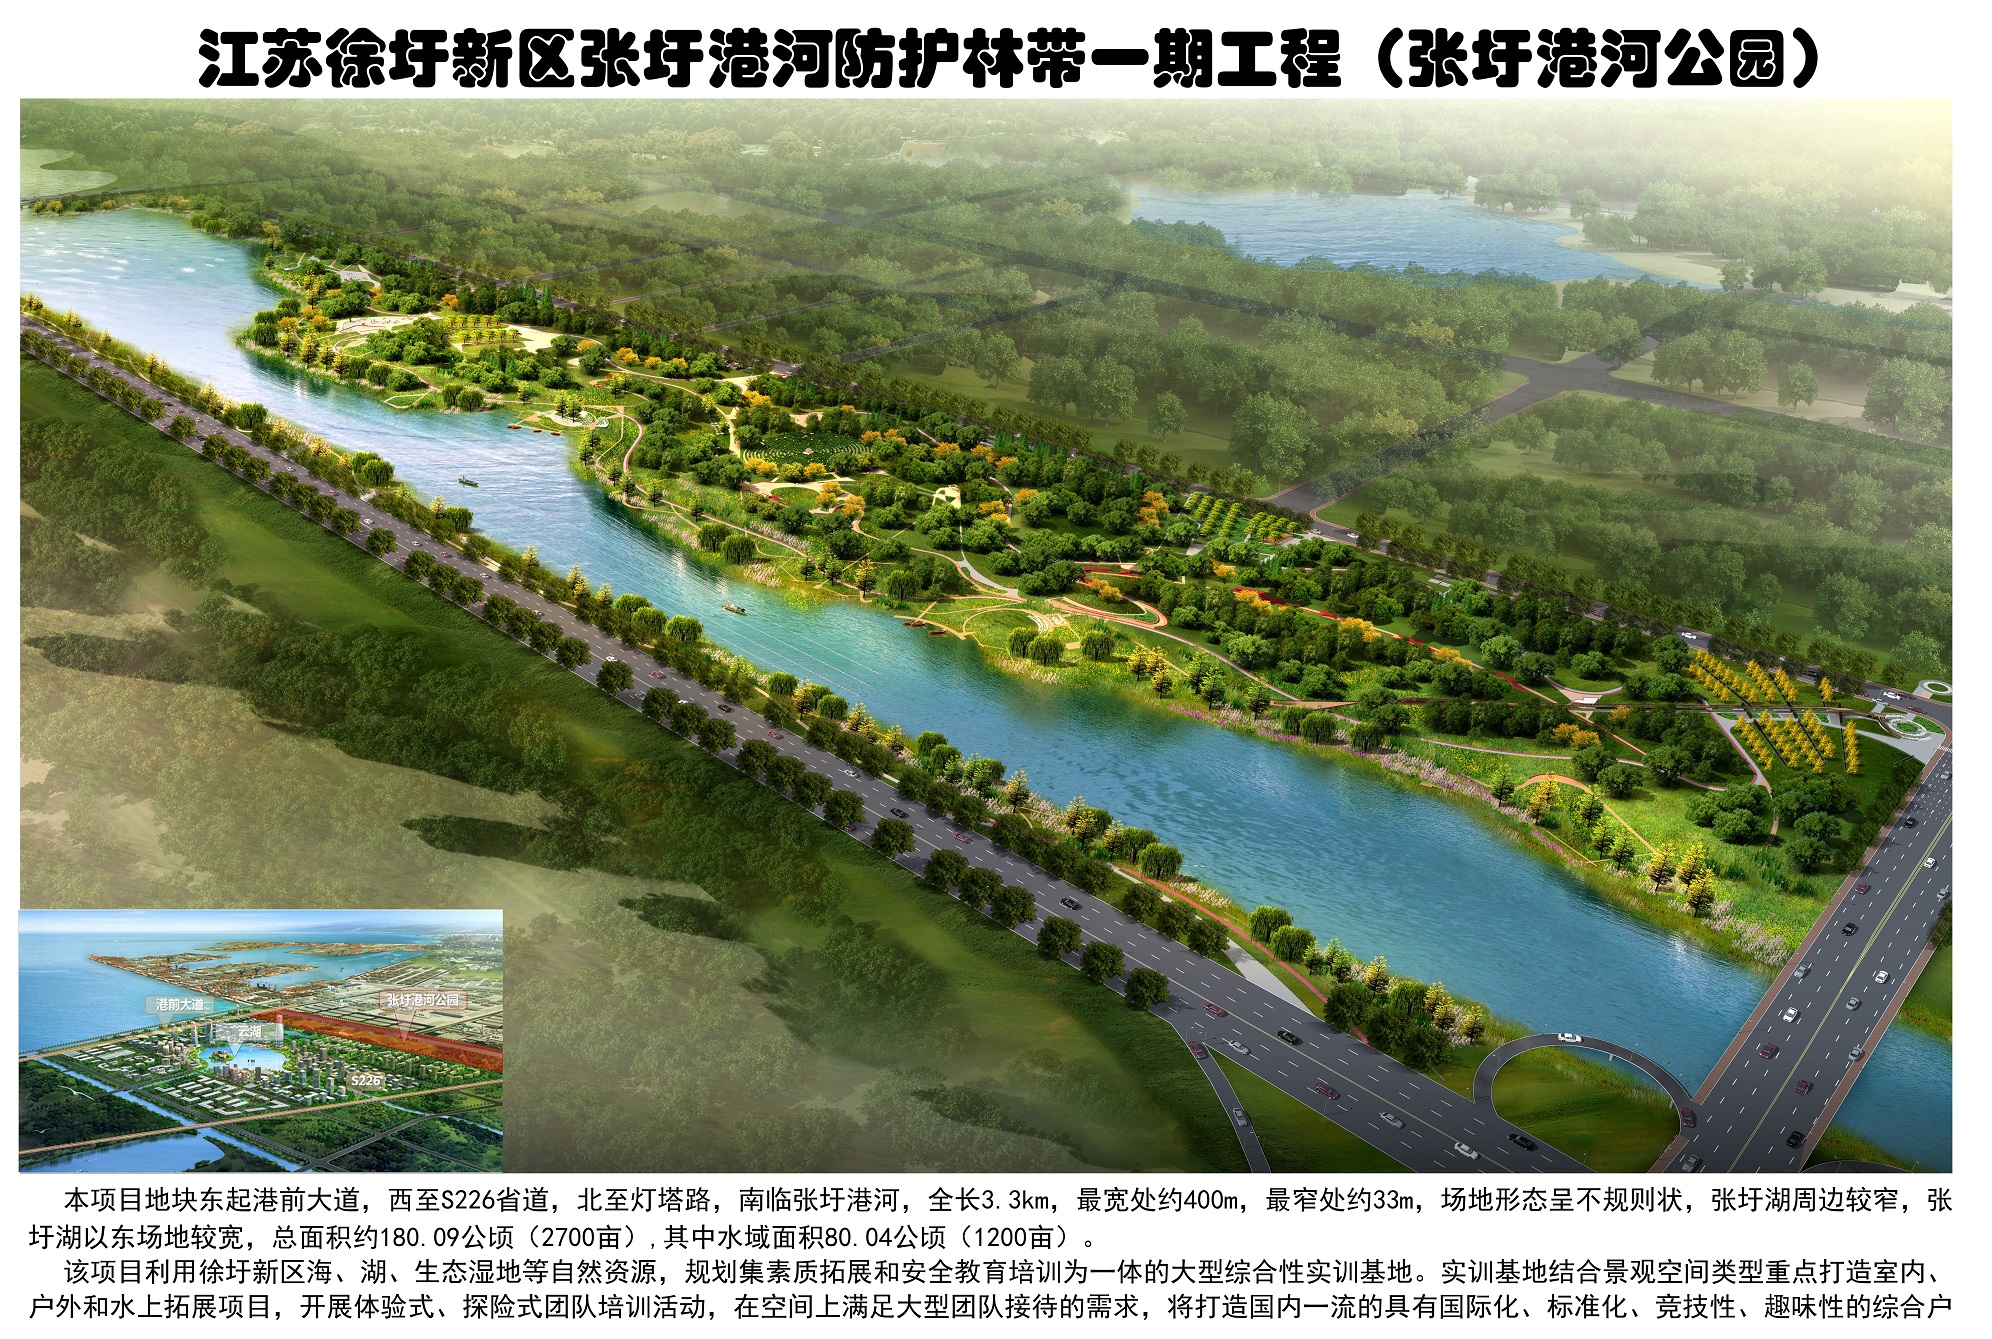 张圩港河北岸综合绿地公园